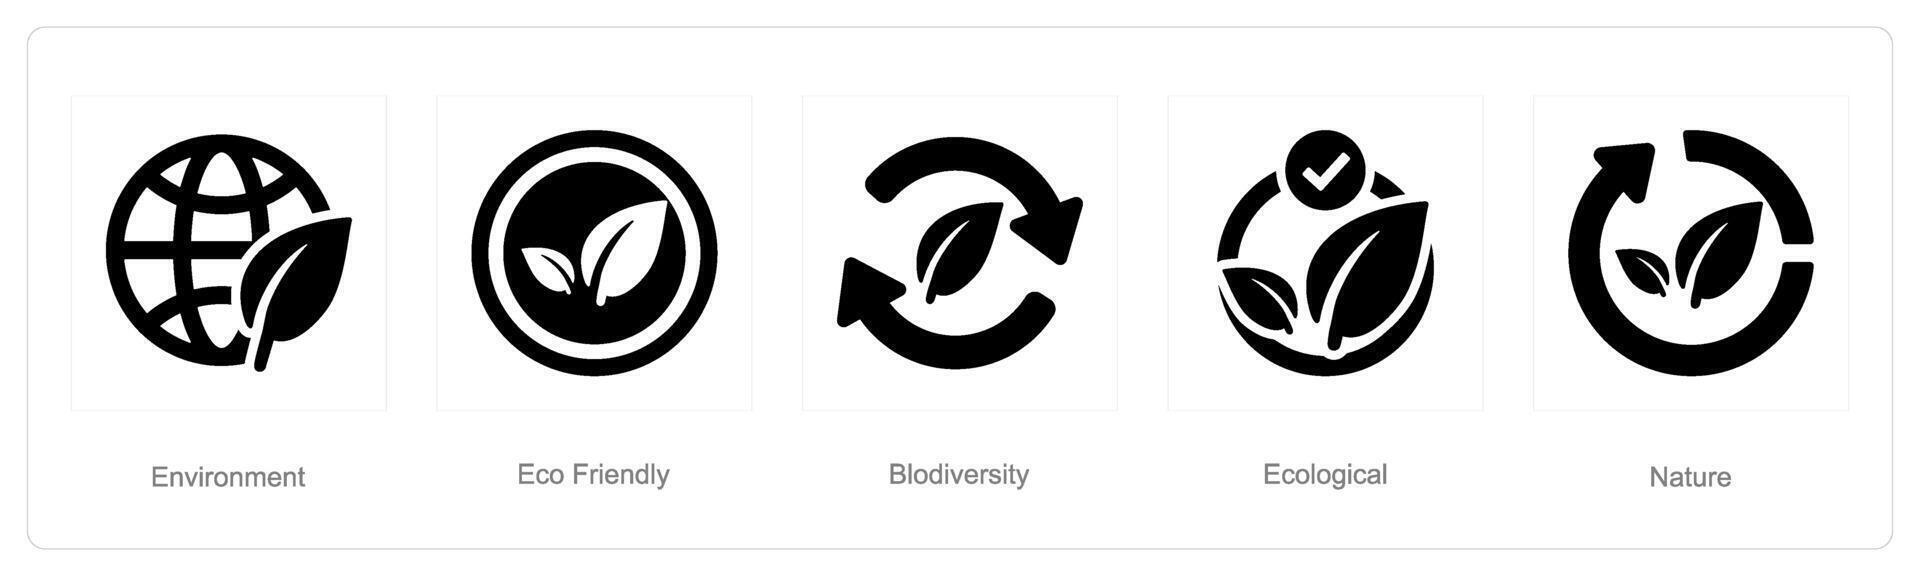 un' impostato di 5 ecologia icone come ambiente, eco amichevole, biodiversità vettore